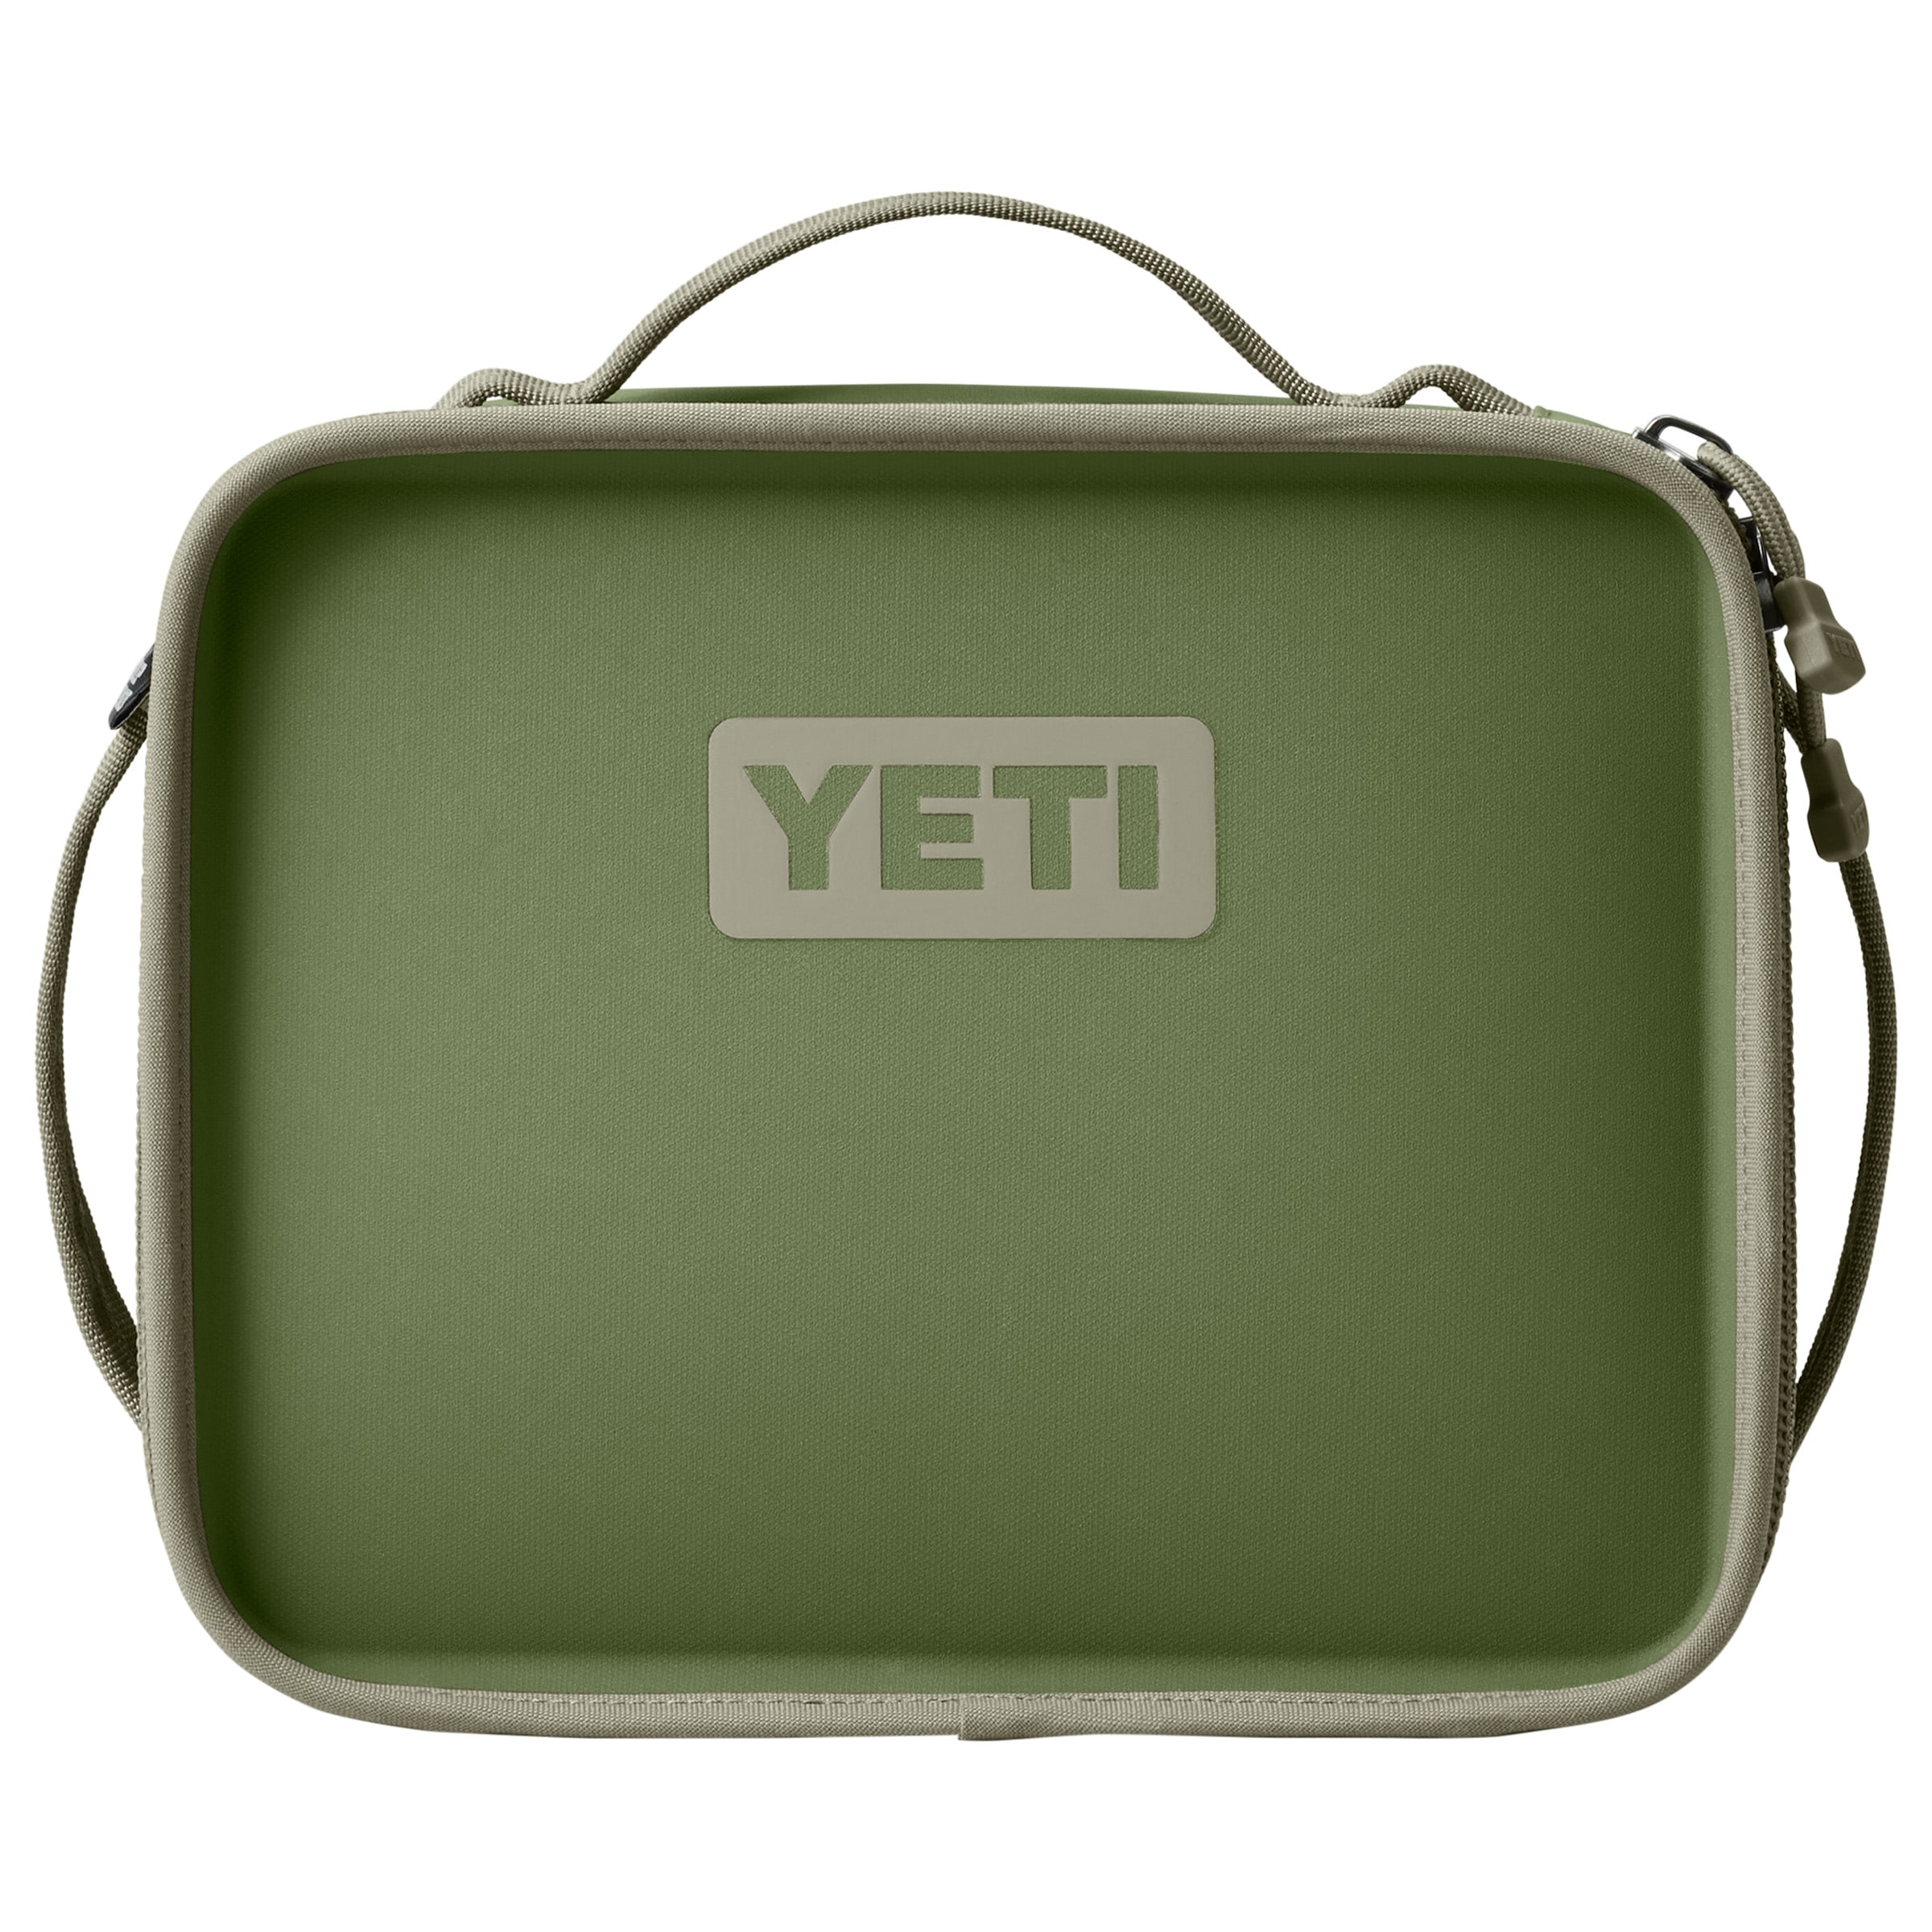  YETI Daytrip Lunch Box, Highlands Olive: Home & Kitchen